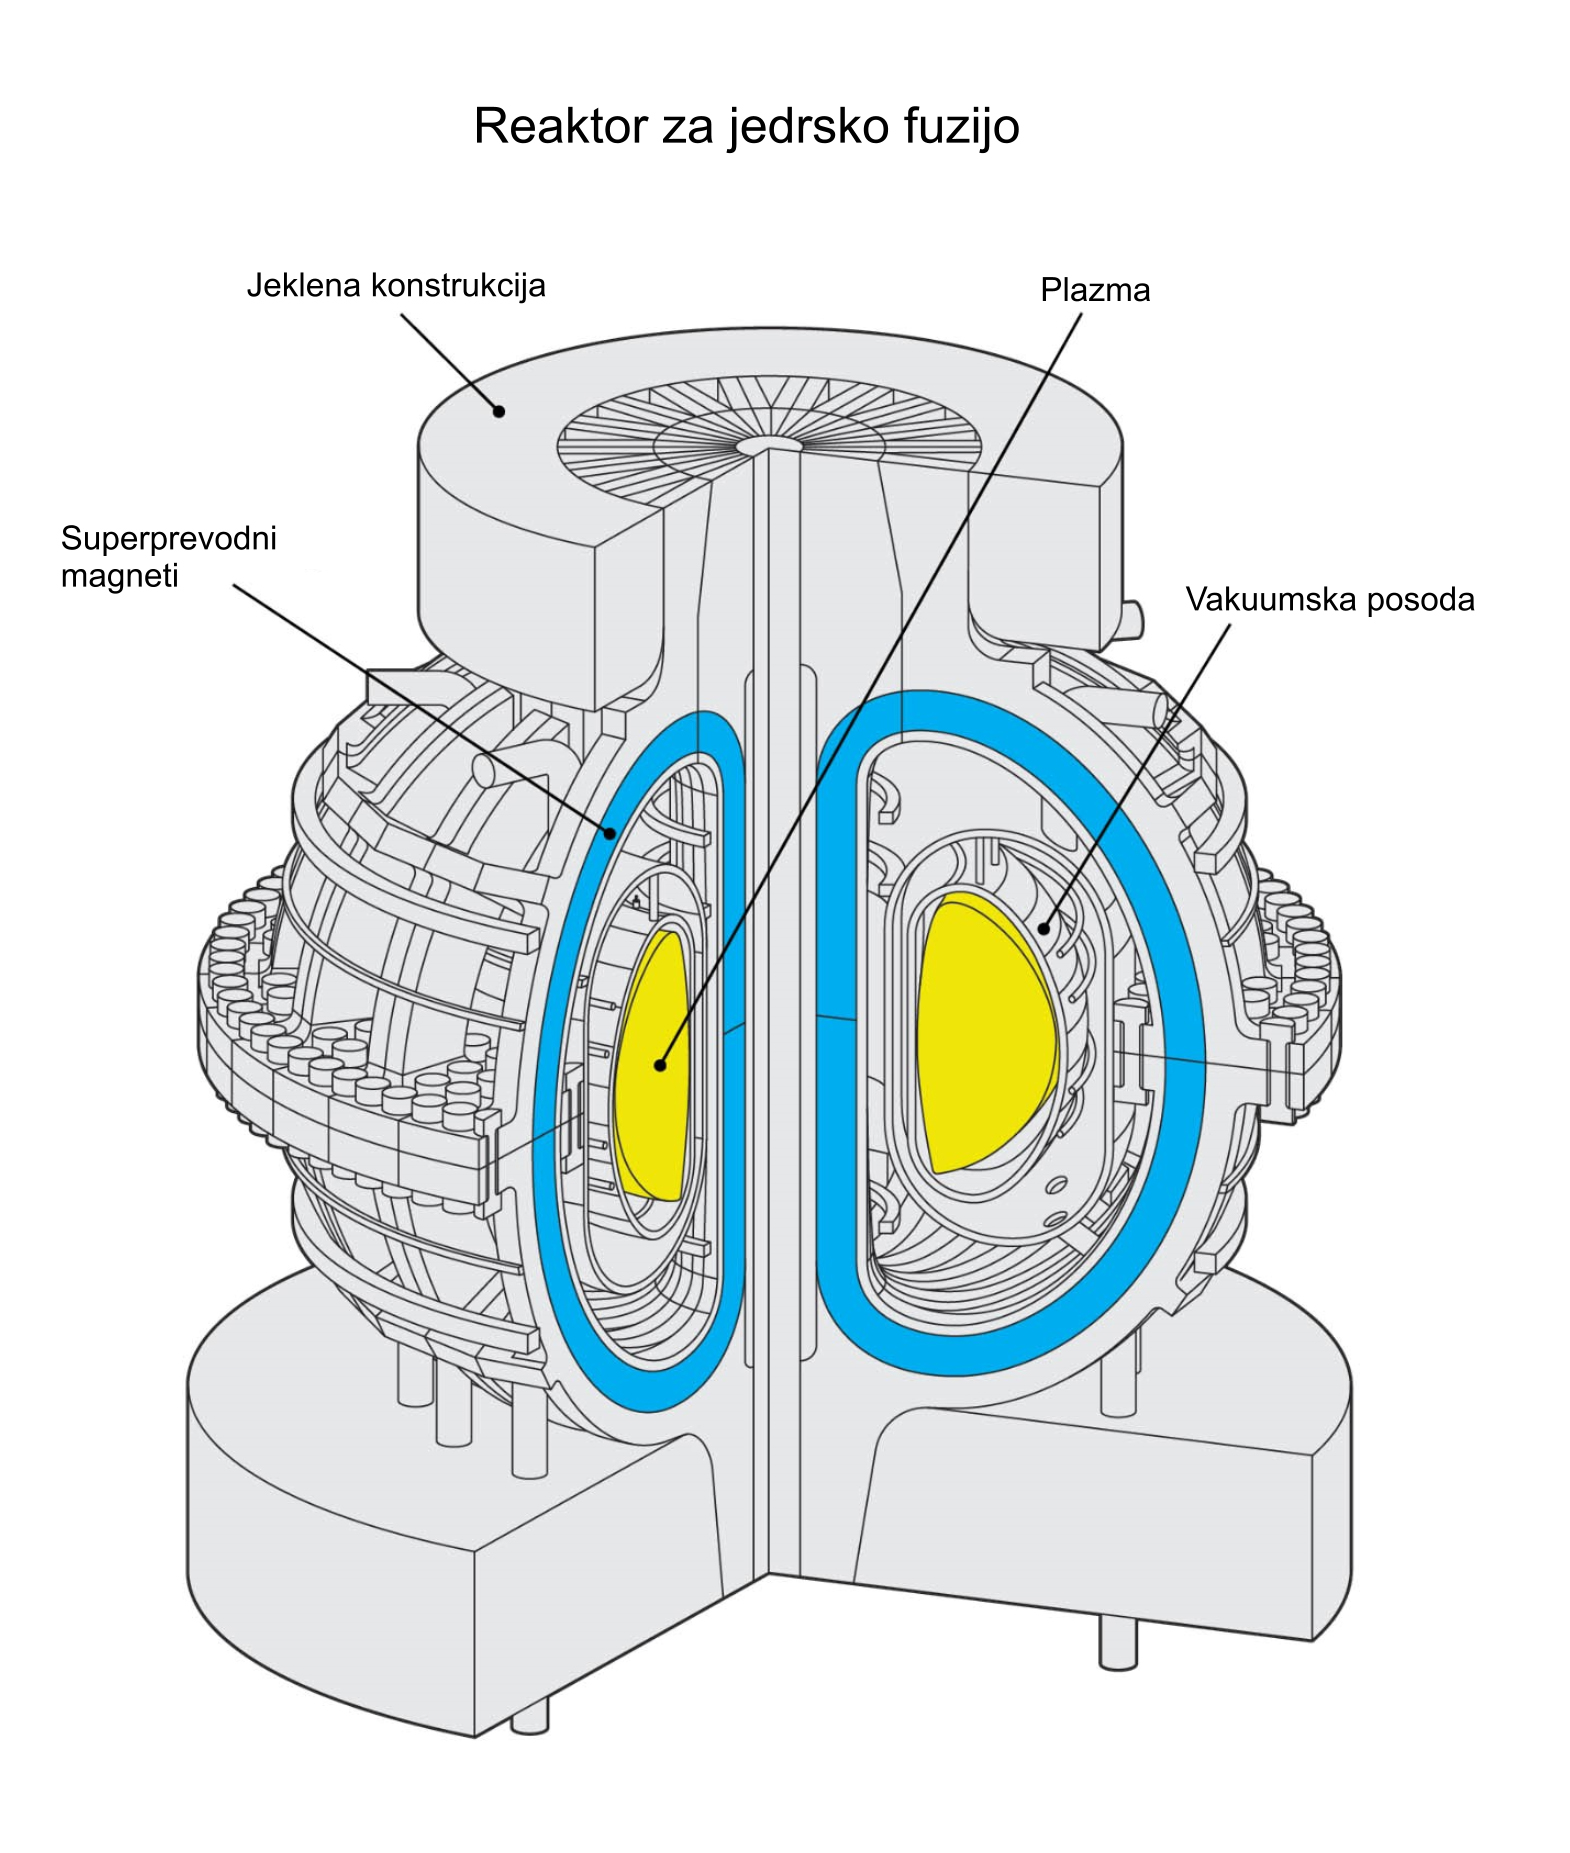 Reaktor za jedrsko fuzijo-